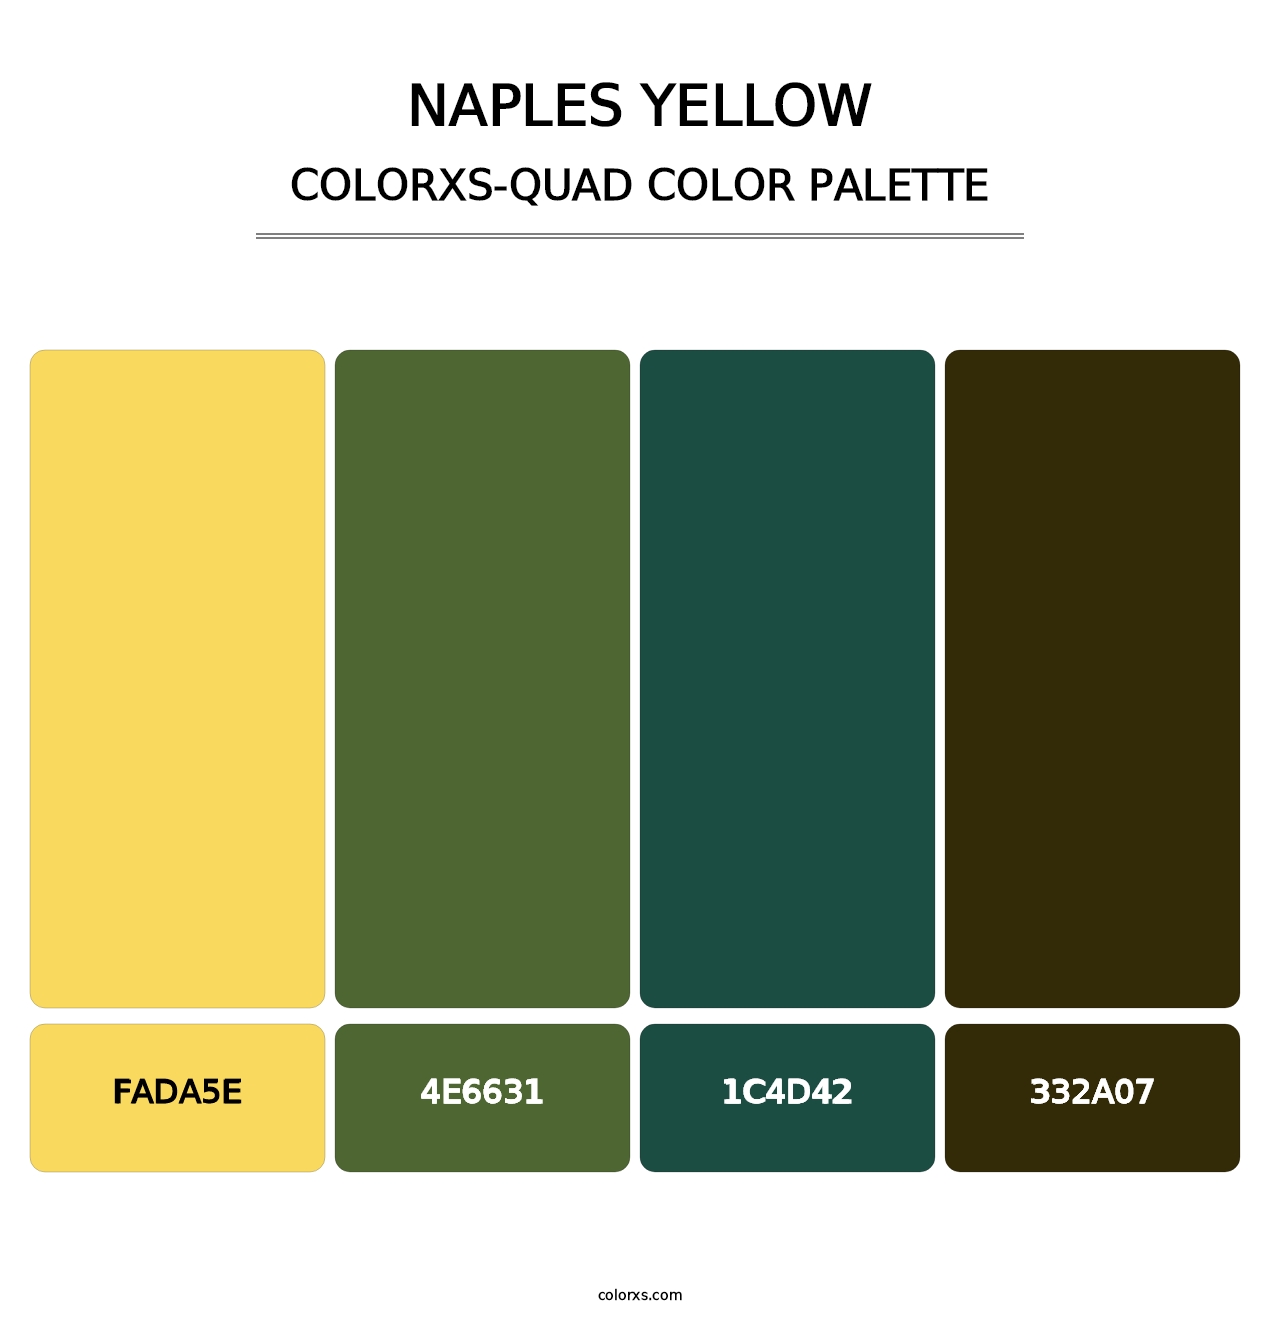 Naples Yellow - Colorxs Quad Palette